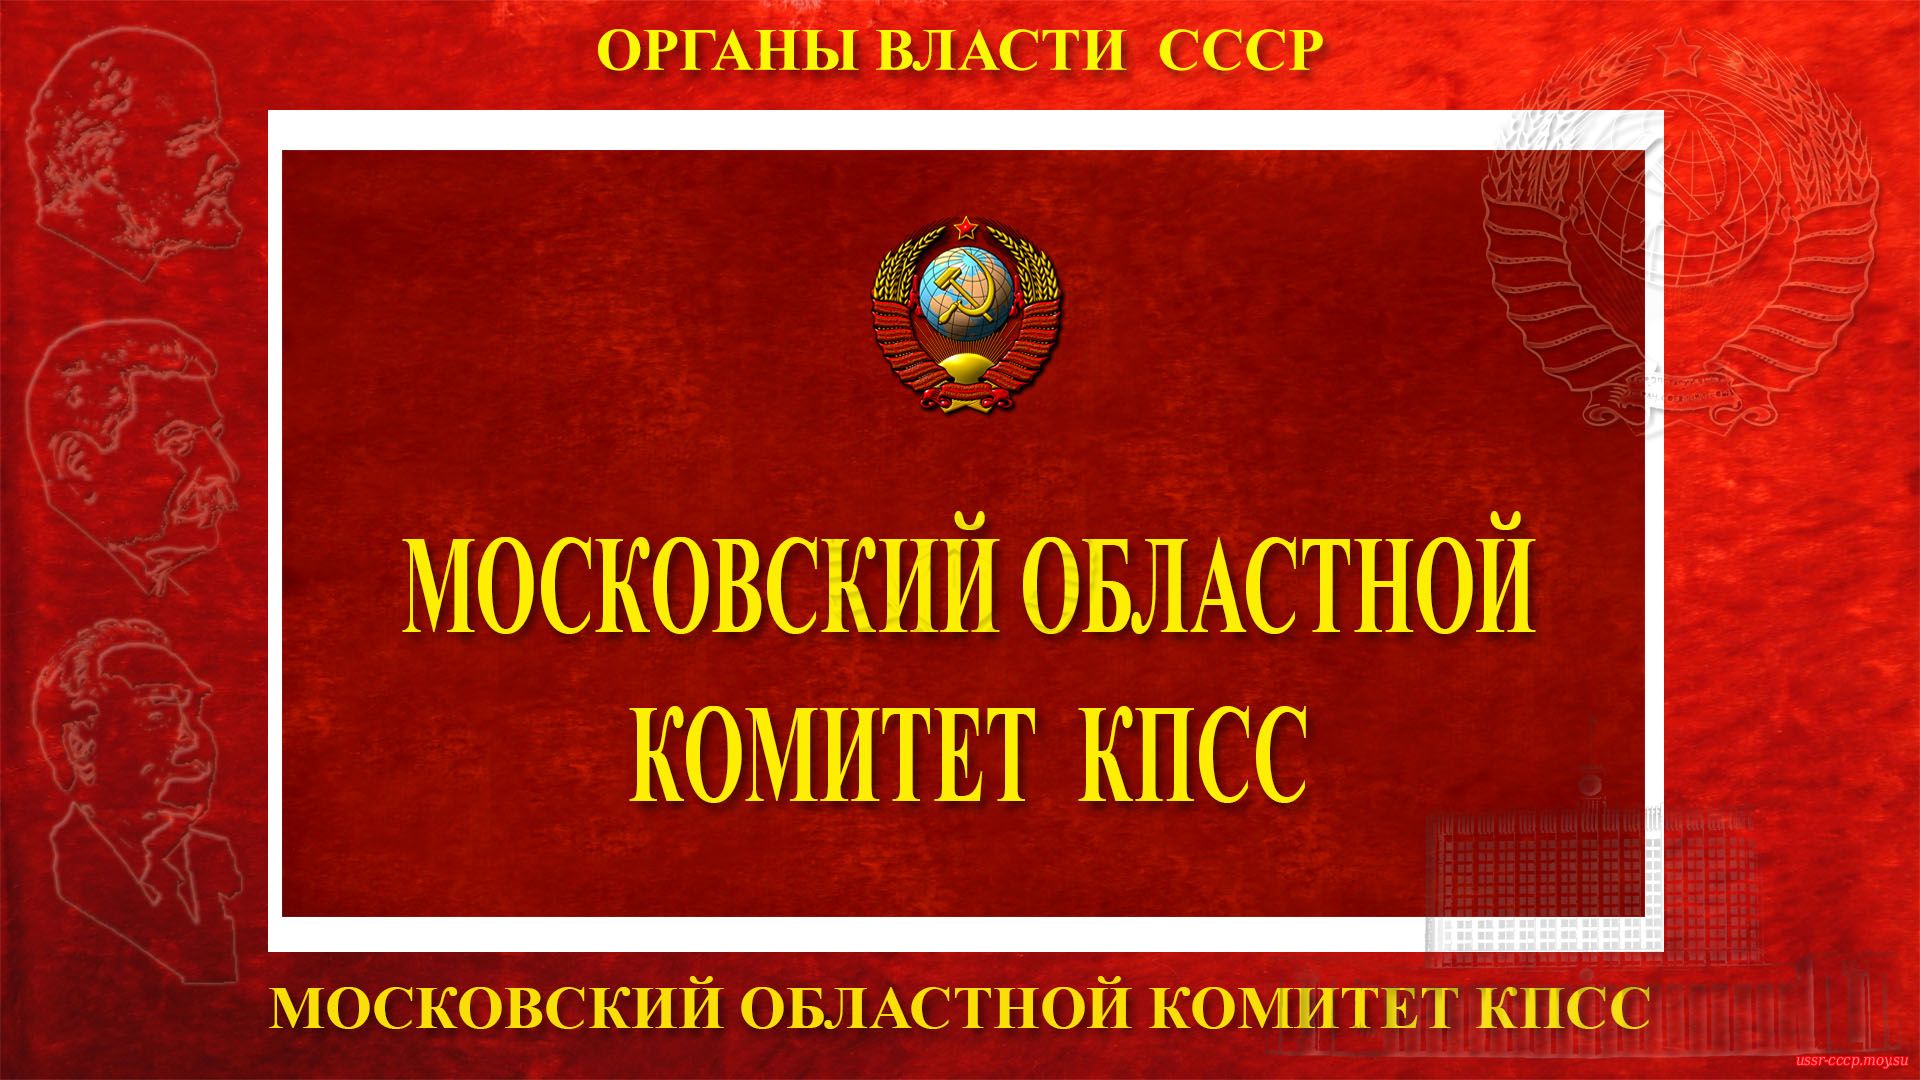 Московский областной комитет КПСС — Центральный партийный орган СССР (полное повествование)